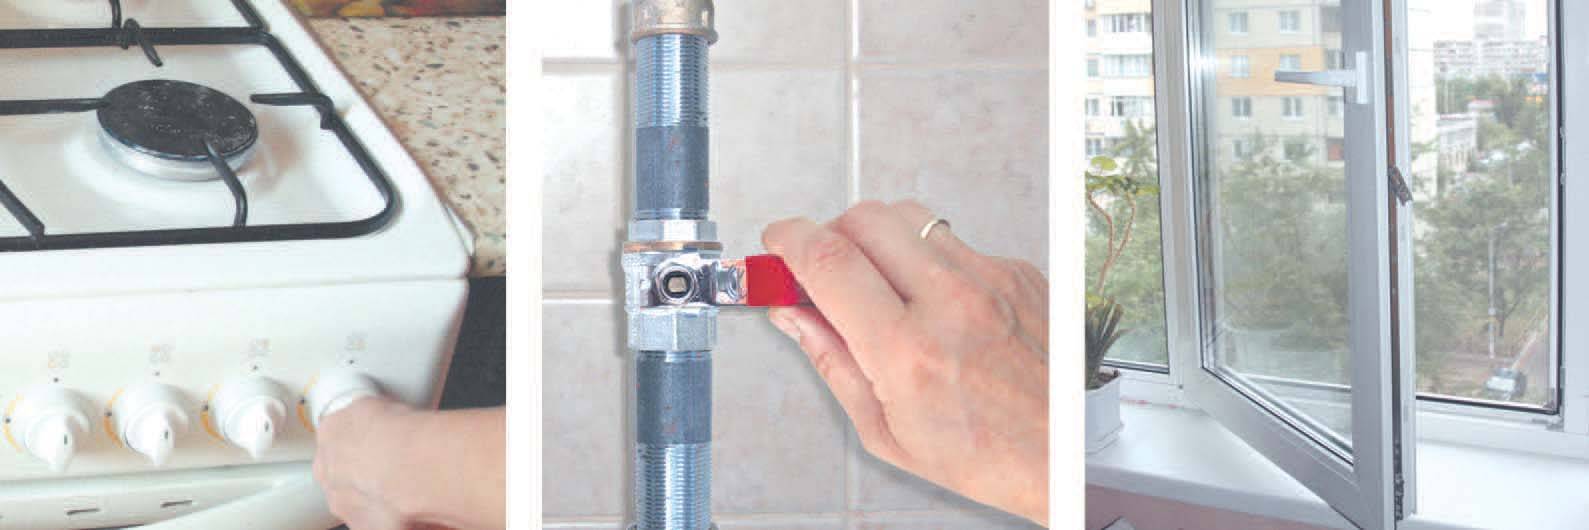 Как правильно подключить газовую плиту - только ремонт своими руками в квартире: фото, видео, инструкции